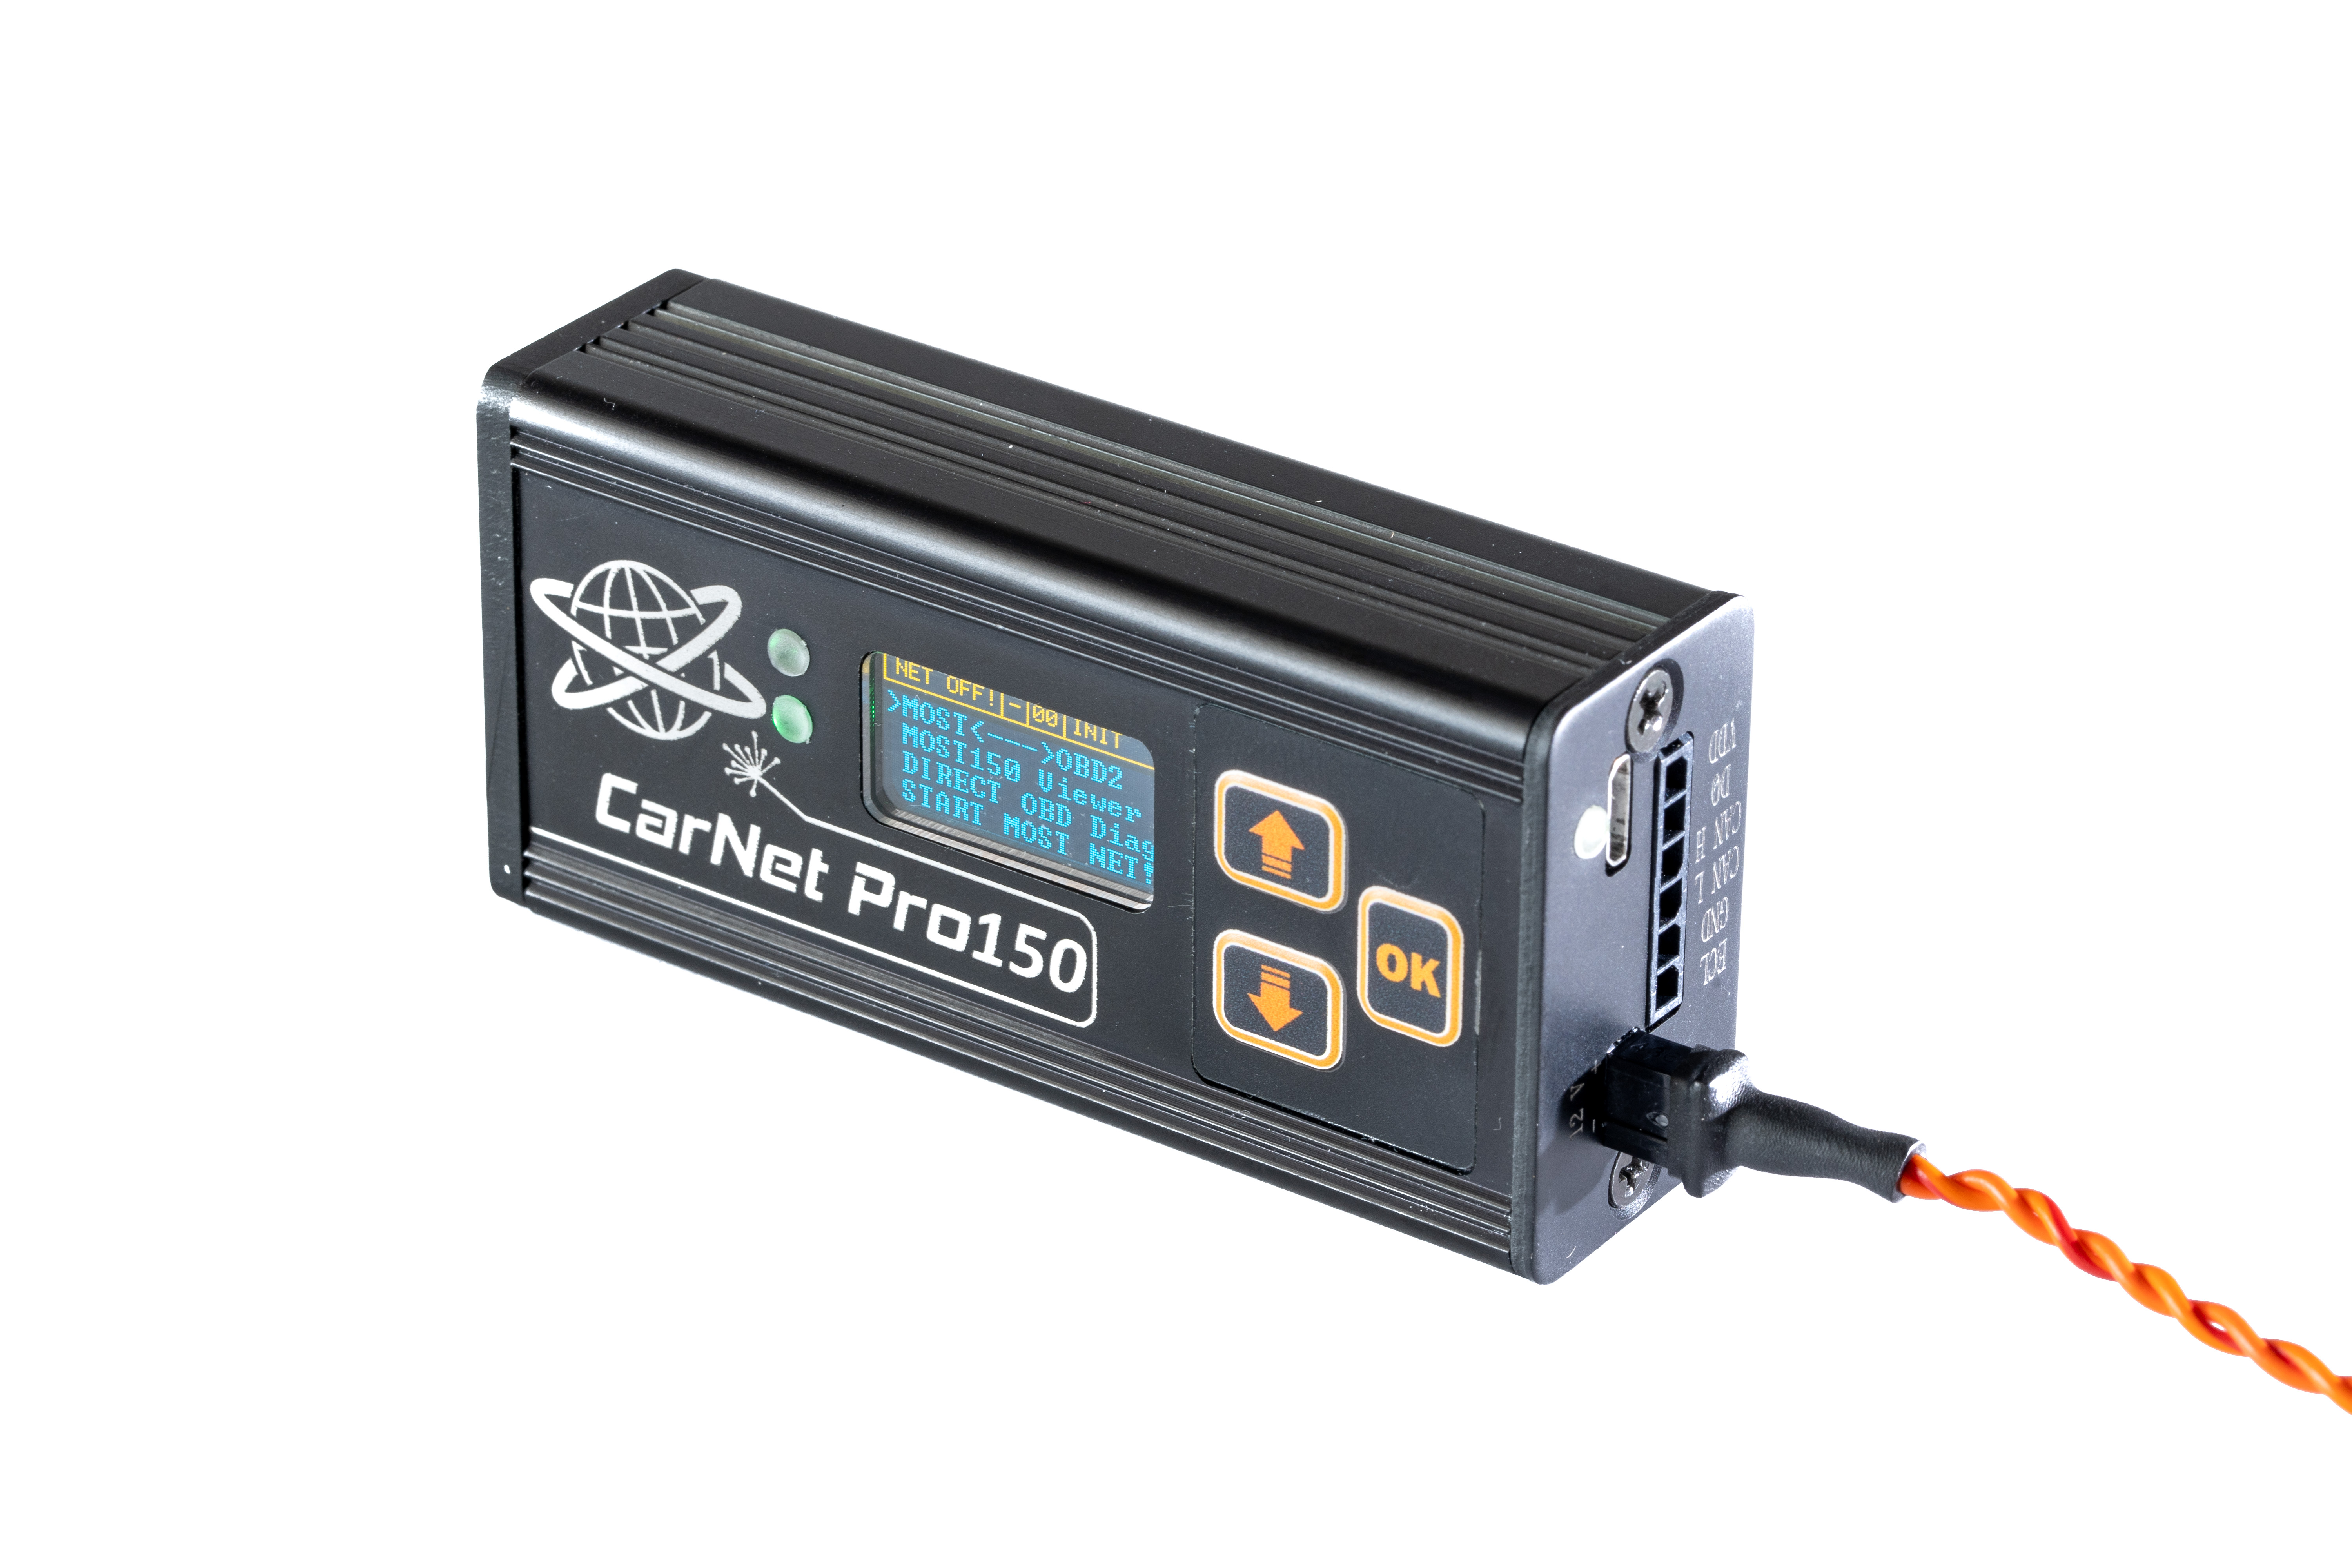 Carnet Pro150 Не Имеет Конкурентов 100% Исключительный Дизайн Уникальное И Профессиональное Системное Устройство MOST Для Диагностики Автомобилей И Электронного Программирования